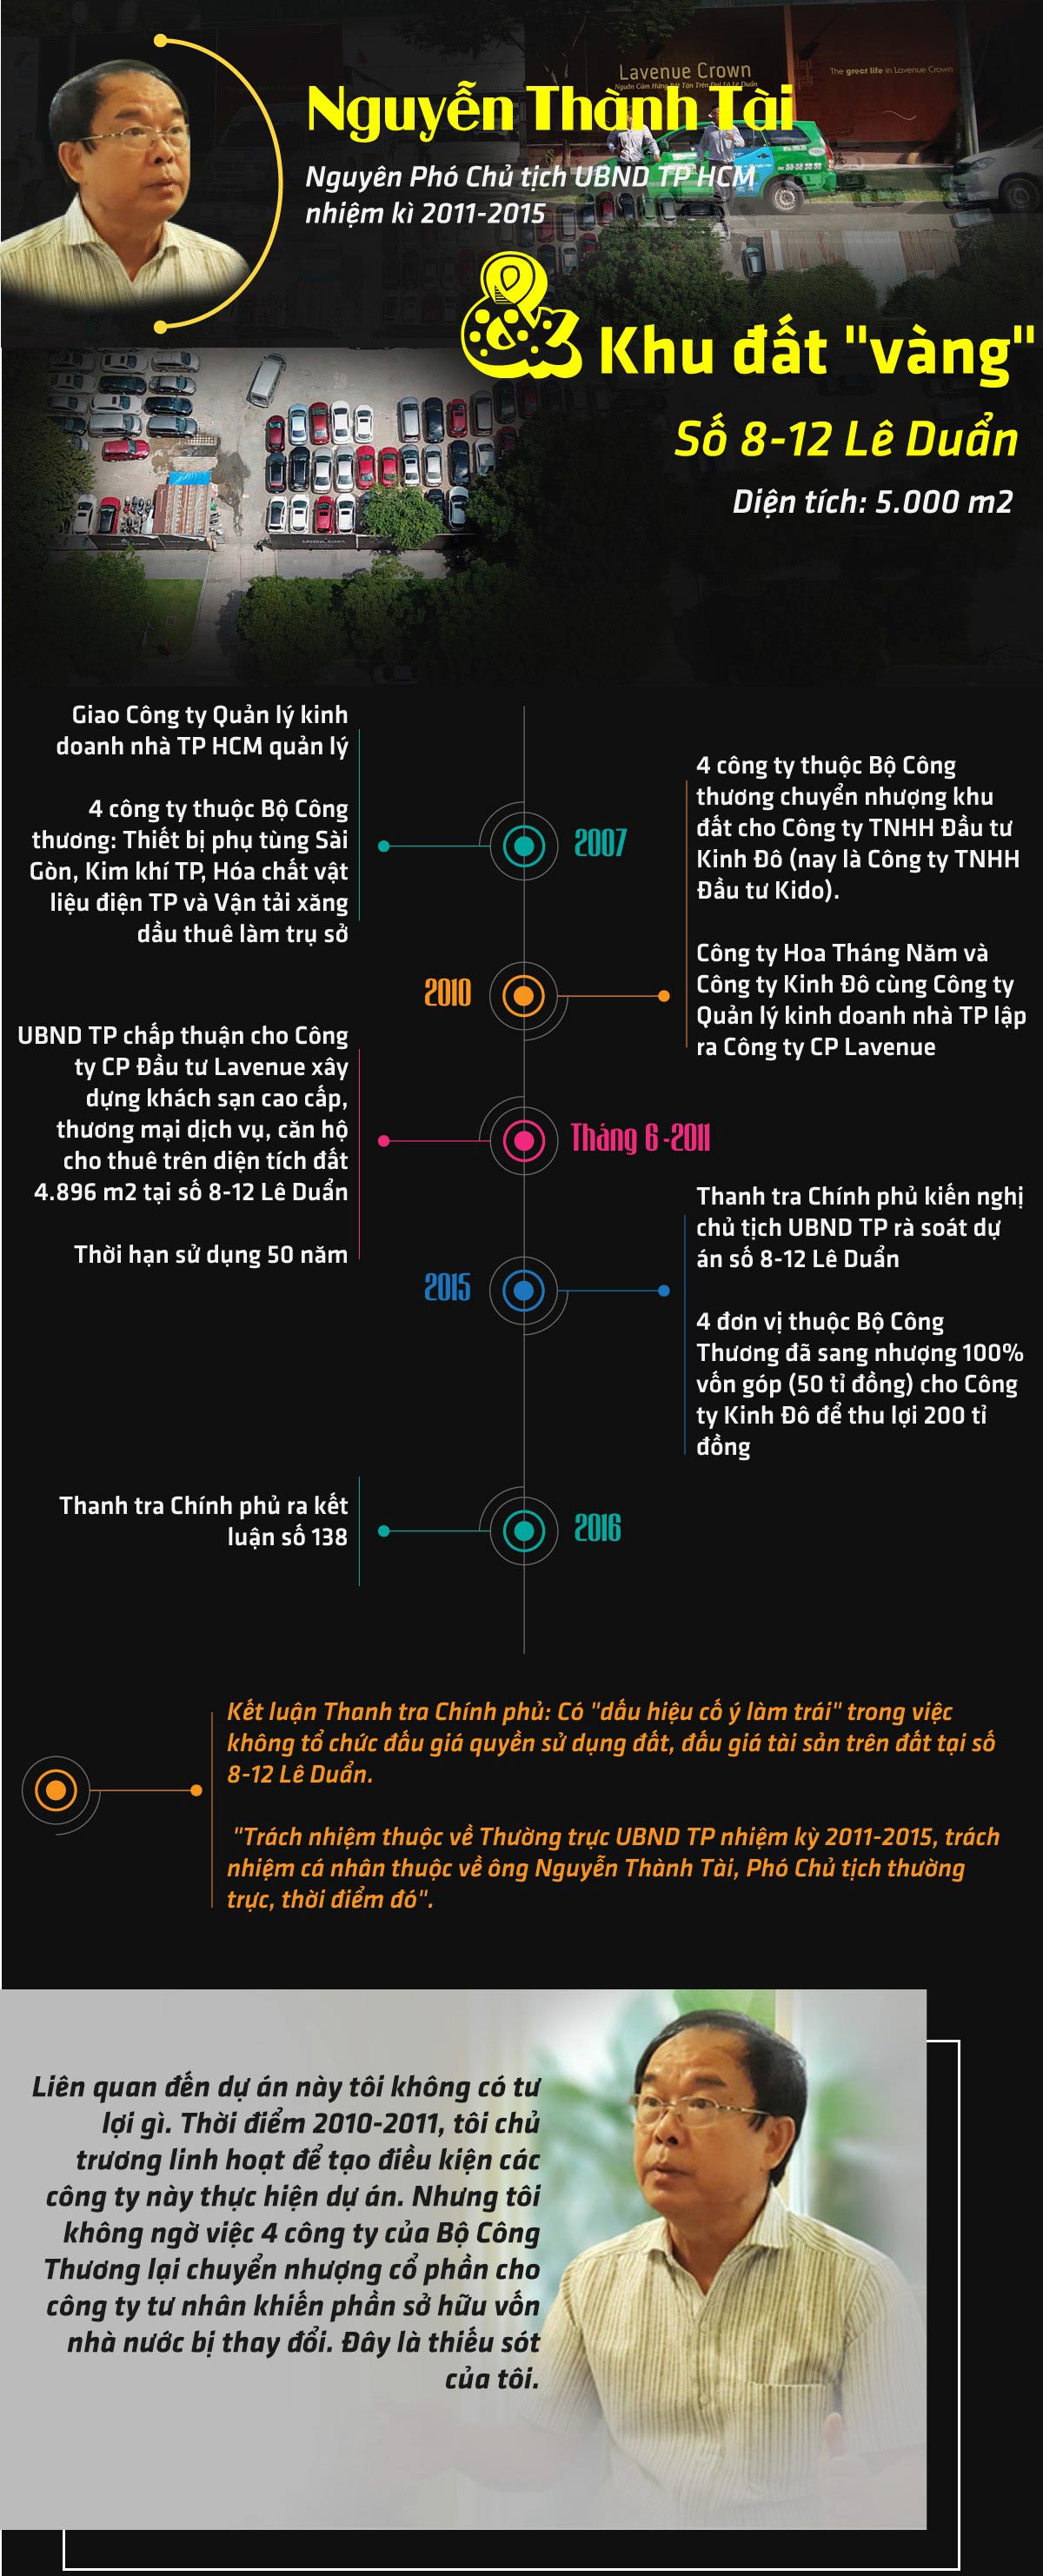 [Infographic] - Ông Nguyễn Thành Tài và khu đất &#34;vàng&#34; 8-12 Lê Duẩn - 1